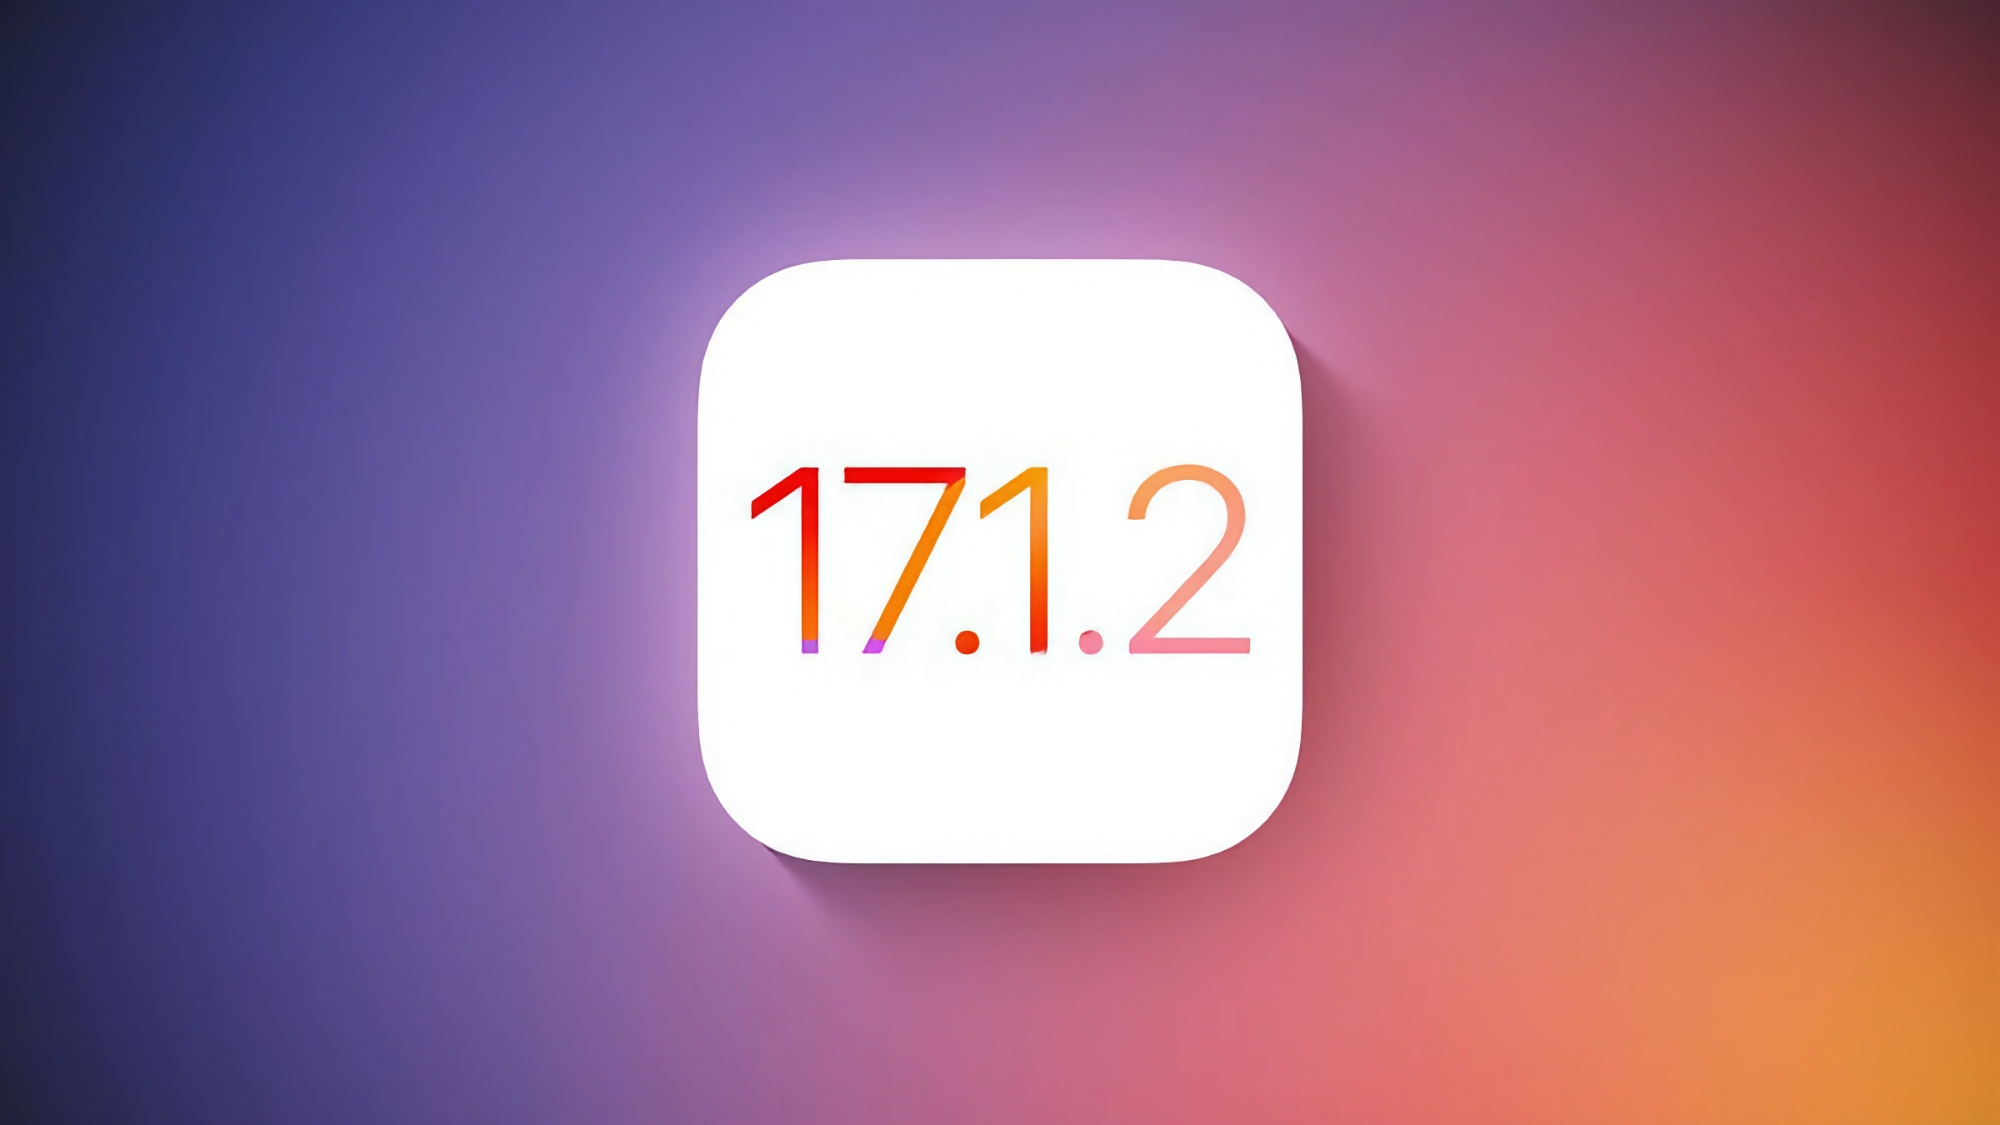 Apple brengt deze week iOS 17.1.2-update uit voor iPhone-gebruikers